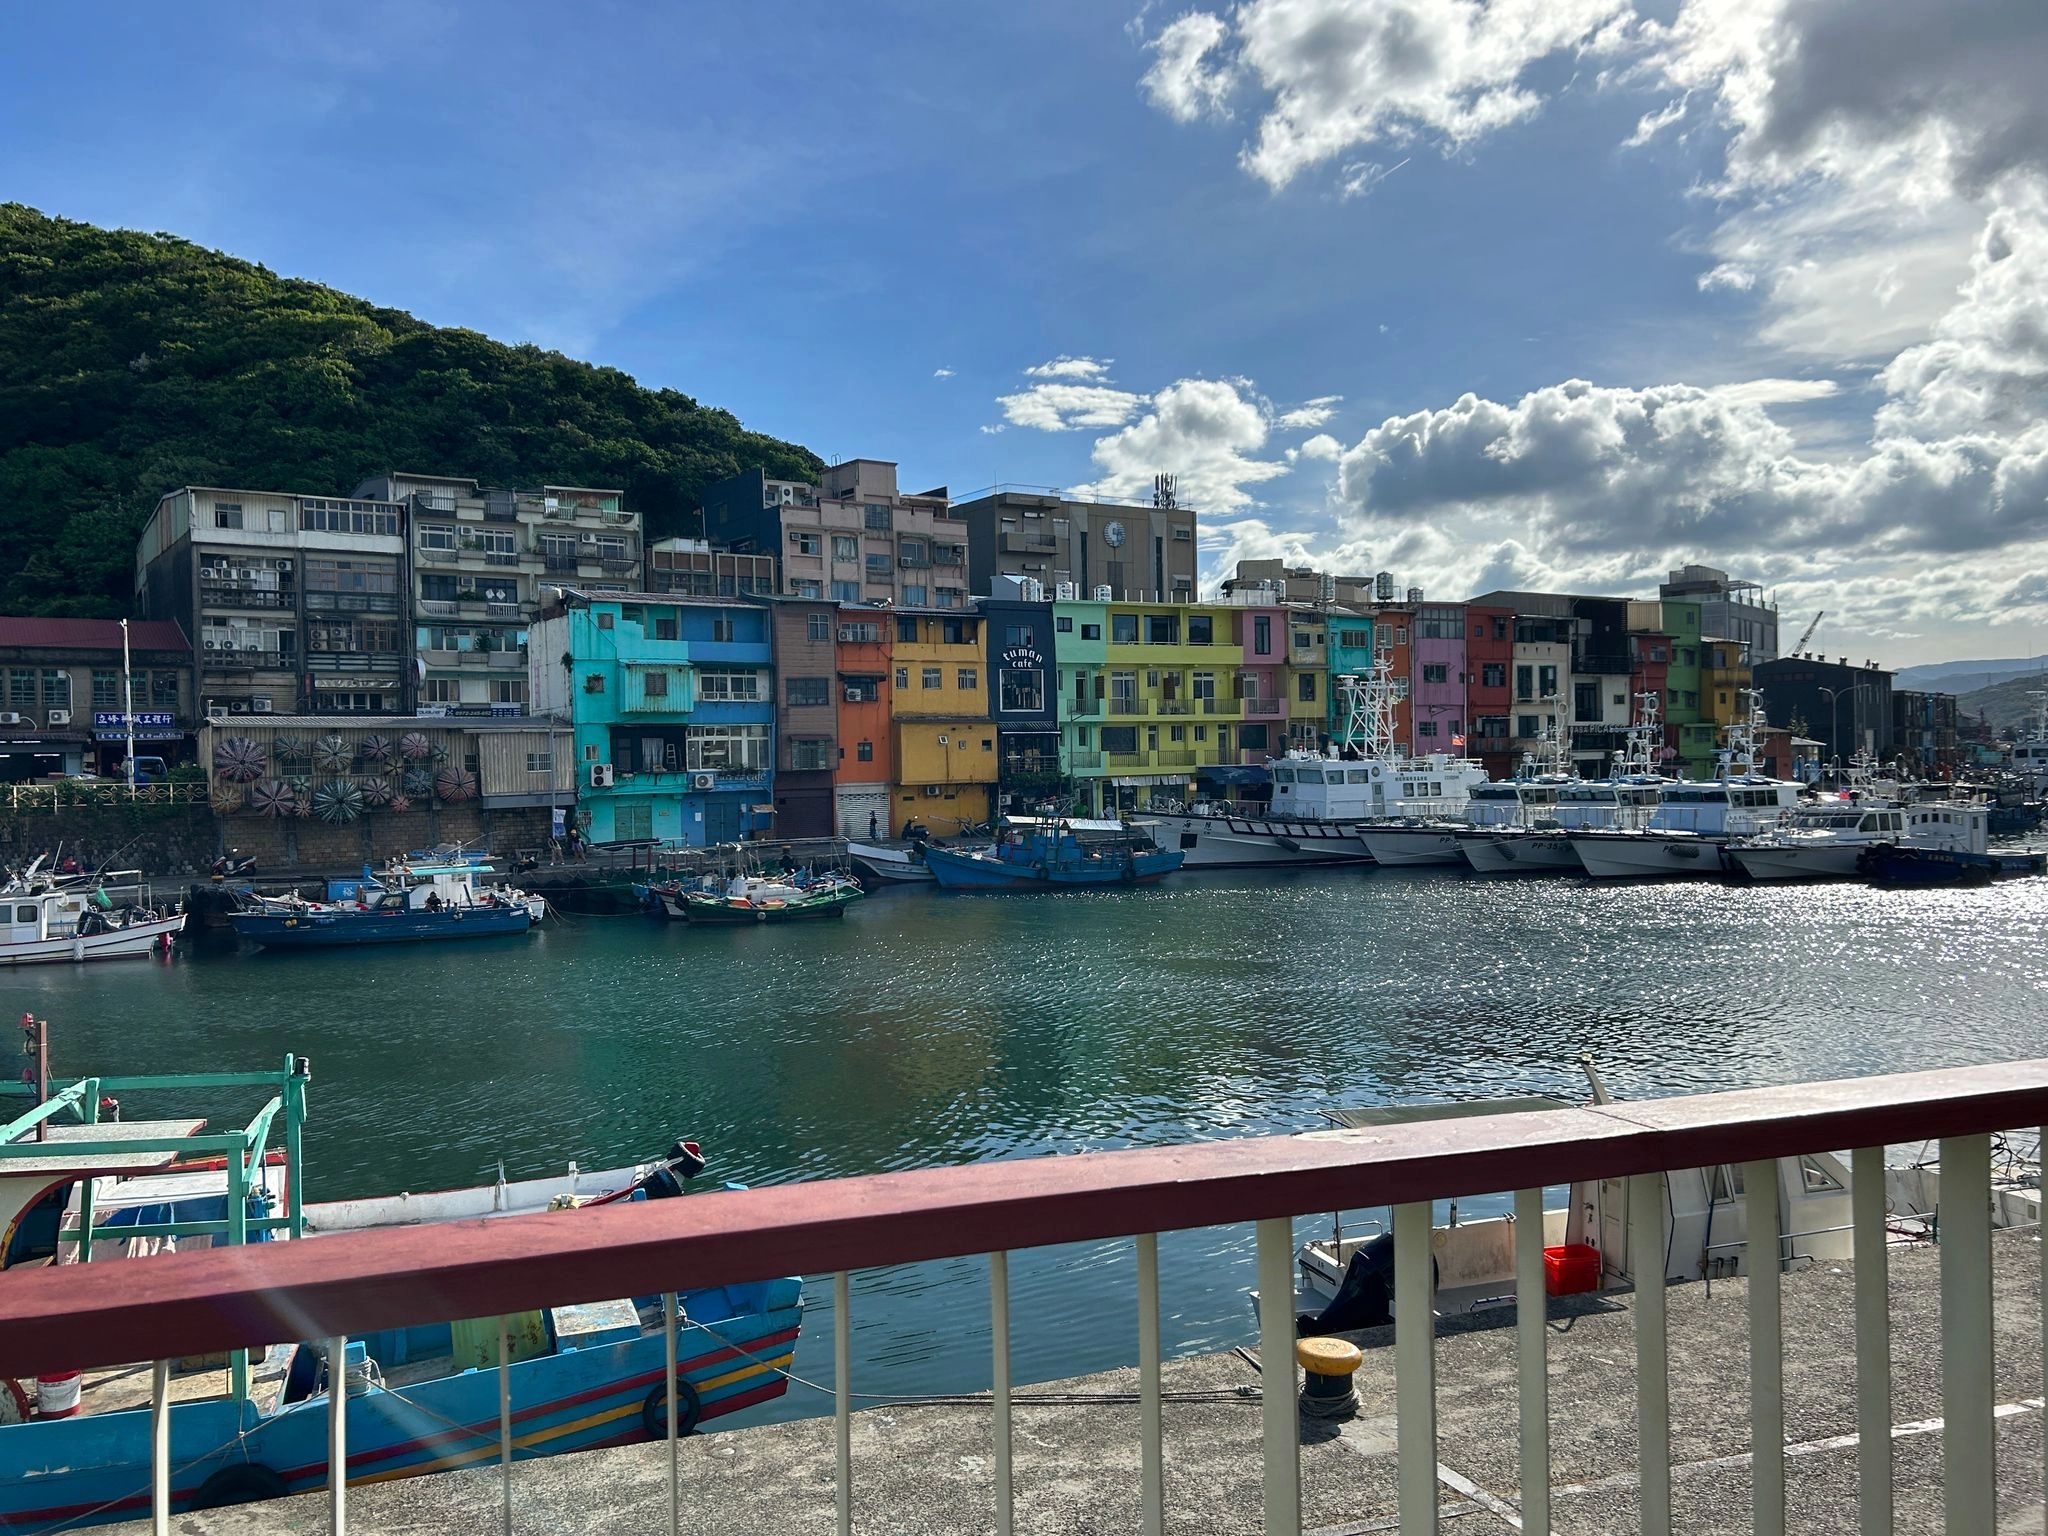 和平島商圈結合了正濱漁港及和平島公園周邊店家，獨特的海港城市魅力。